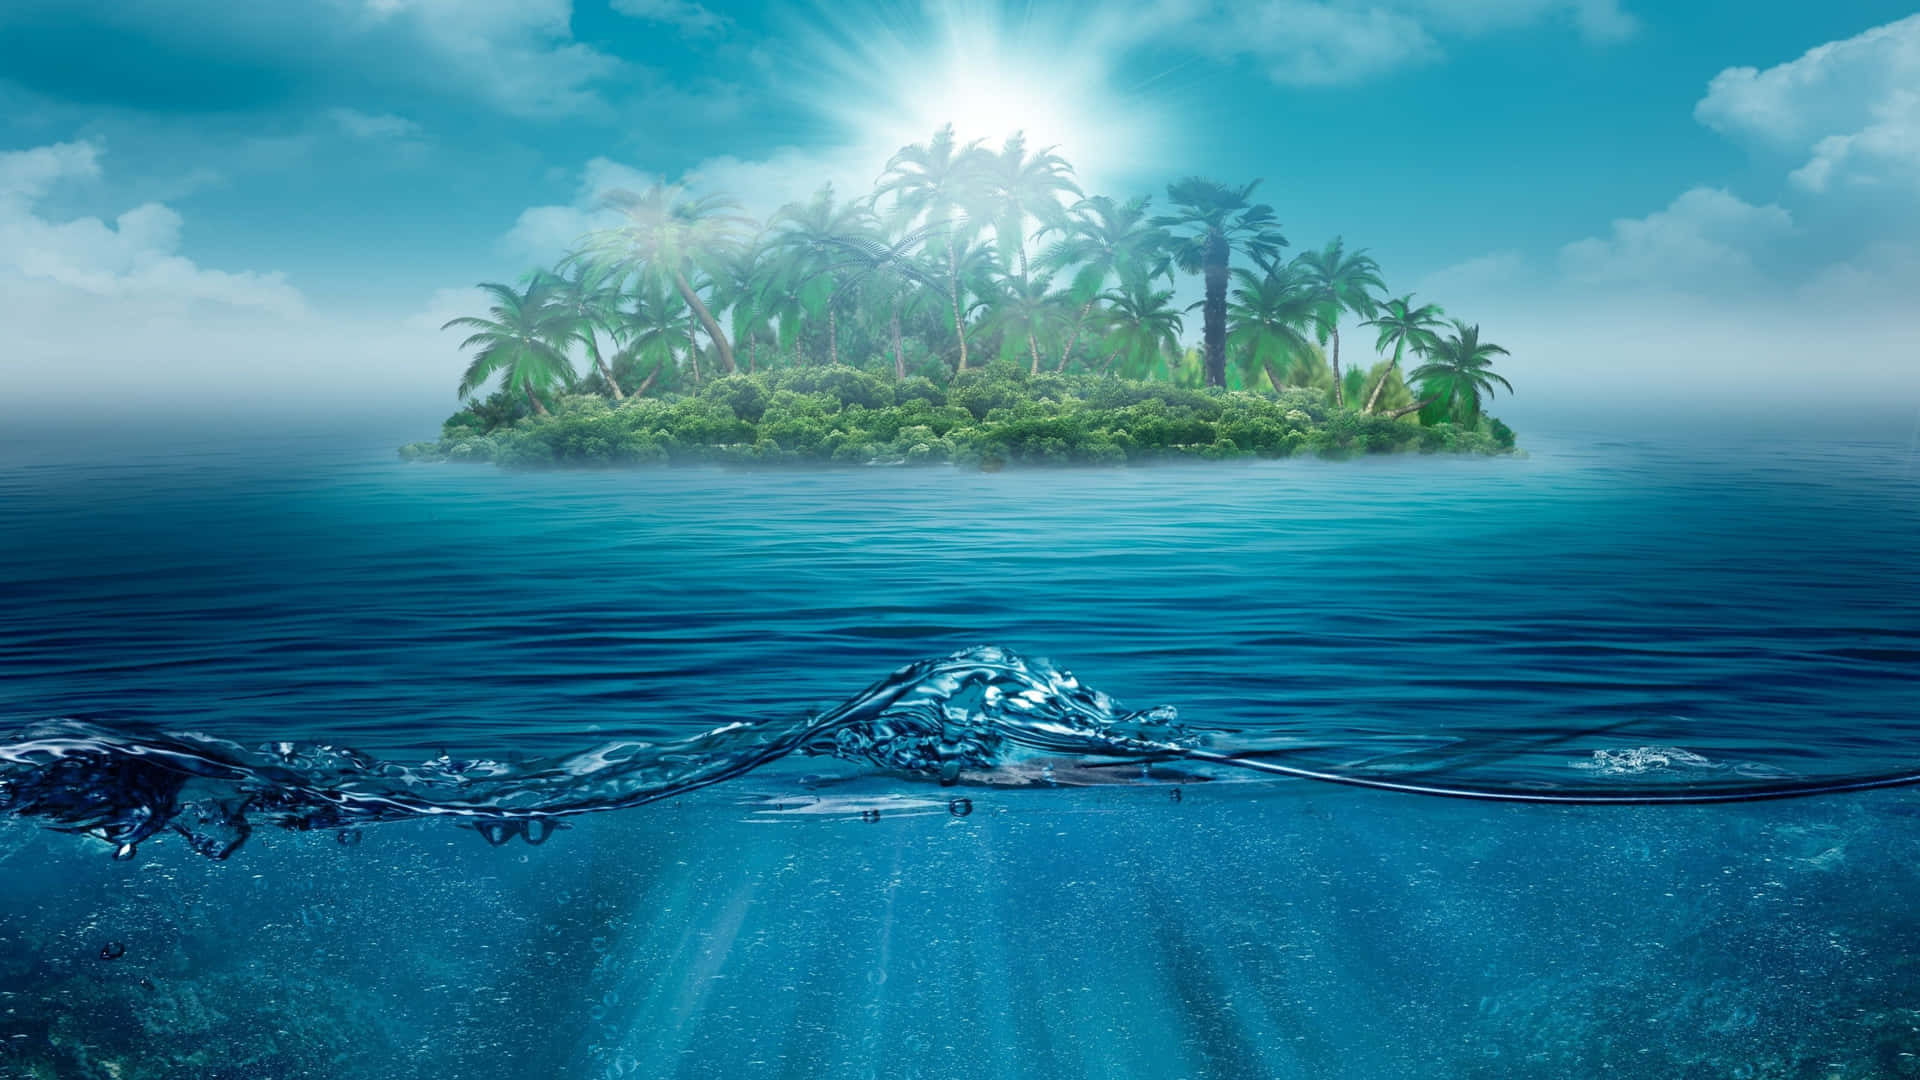 Tropical Island Ocean 4K iPad Underwater Photography Wallpaper